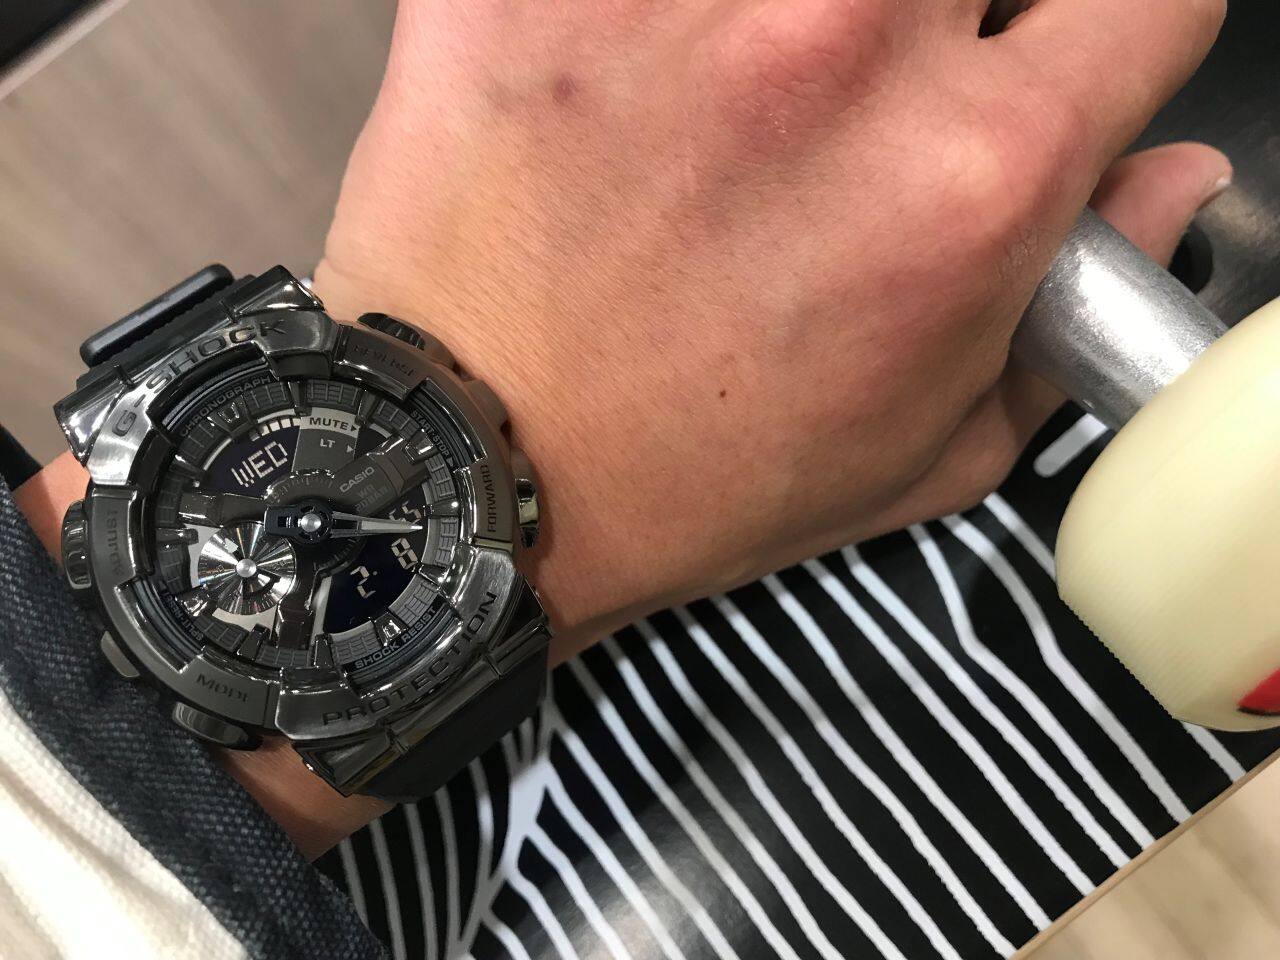 GM-2100BB-1AER Men\'s mzwatcheslk Watch Black G-Shock Series Metal – All Casio